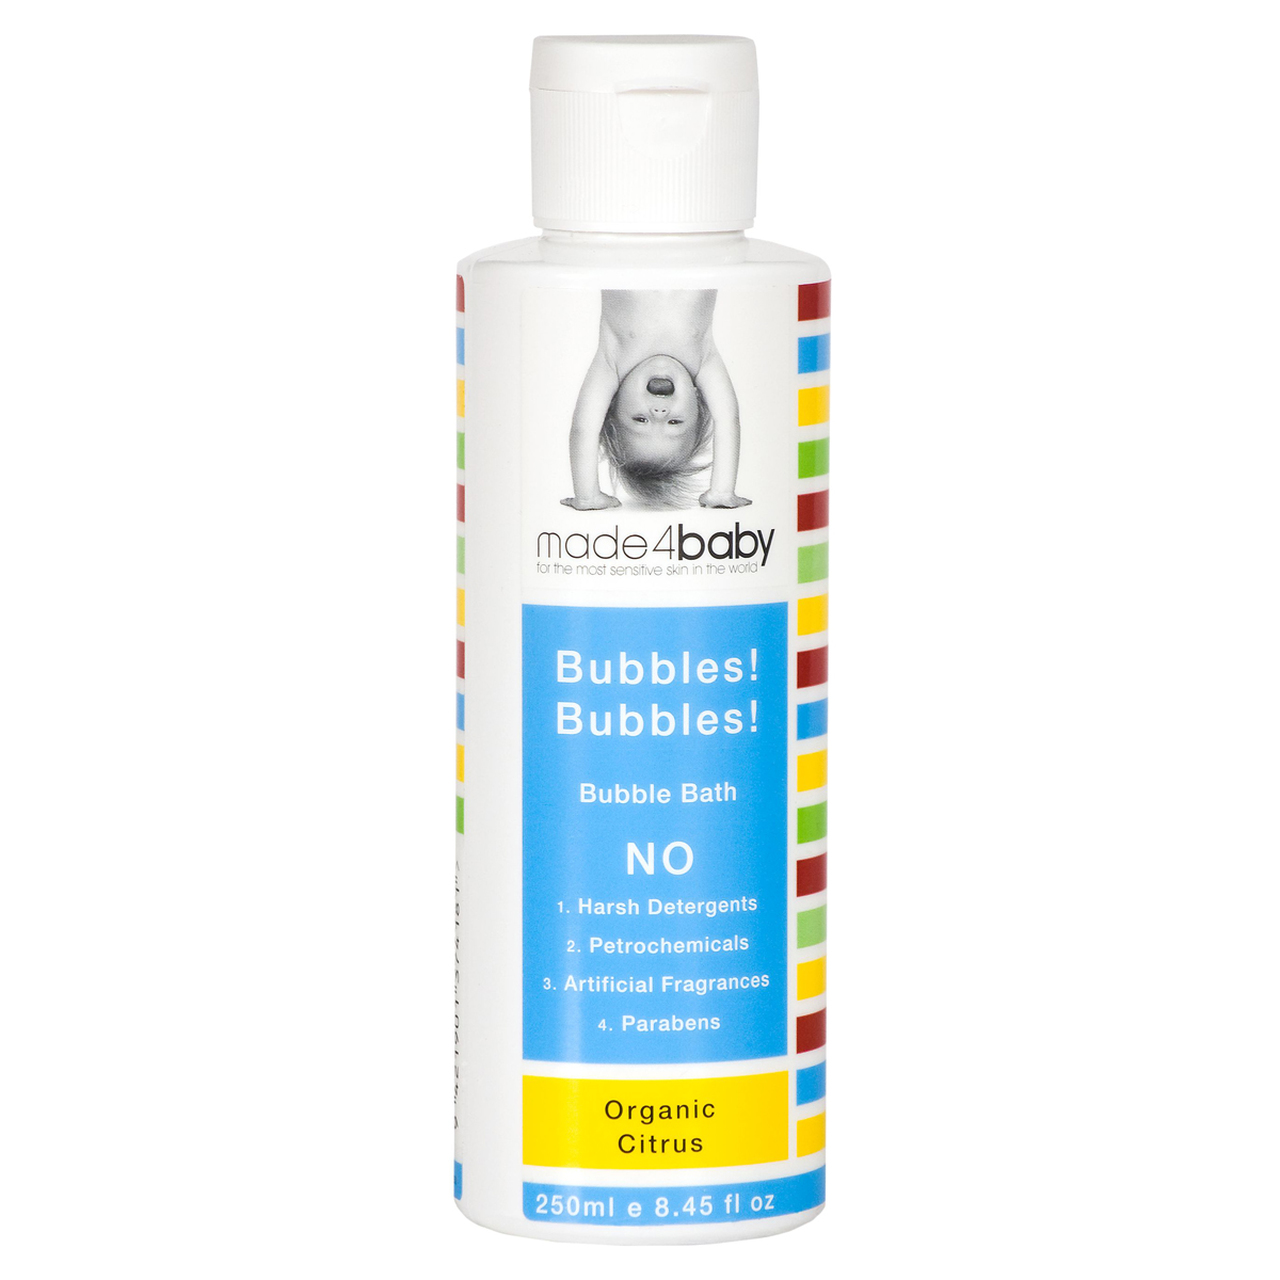 Made4Baby Bubbles! Bubbles! Bubble Bath